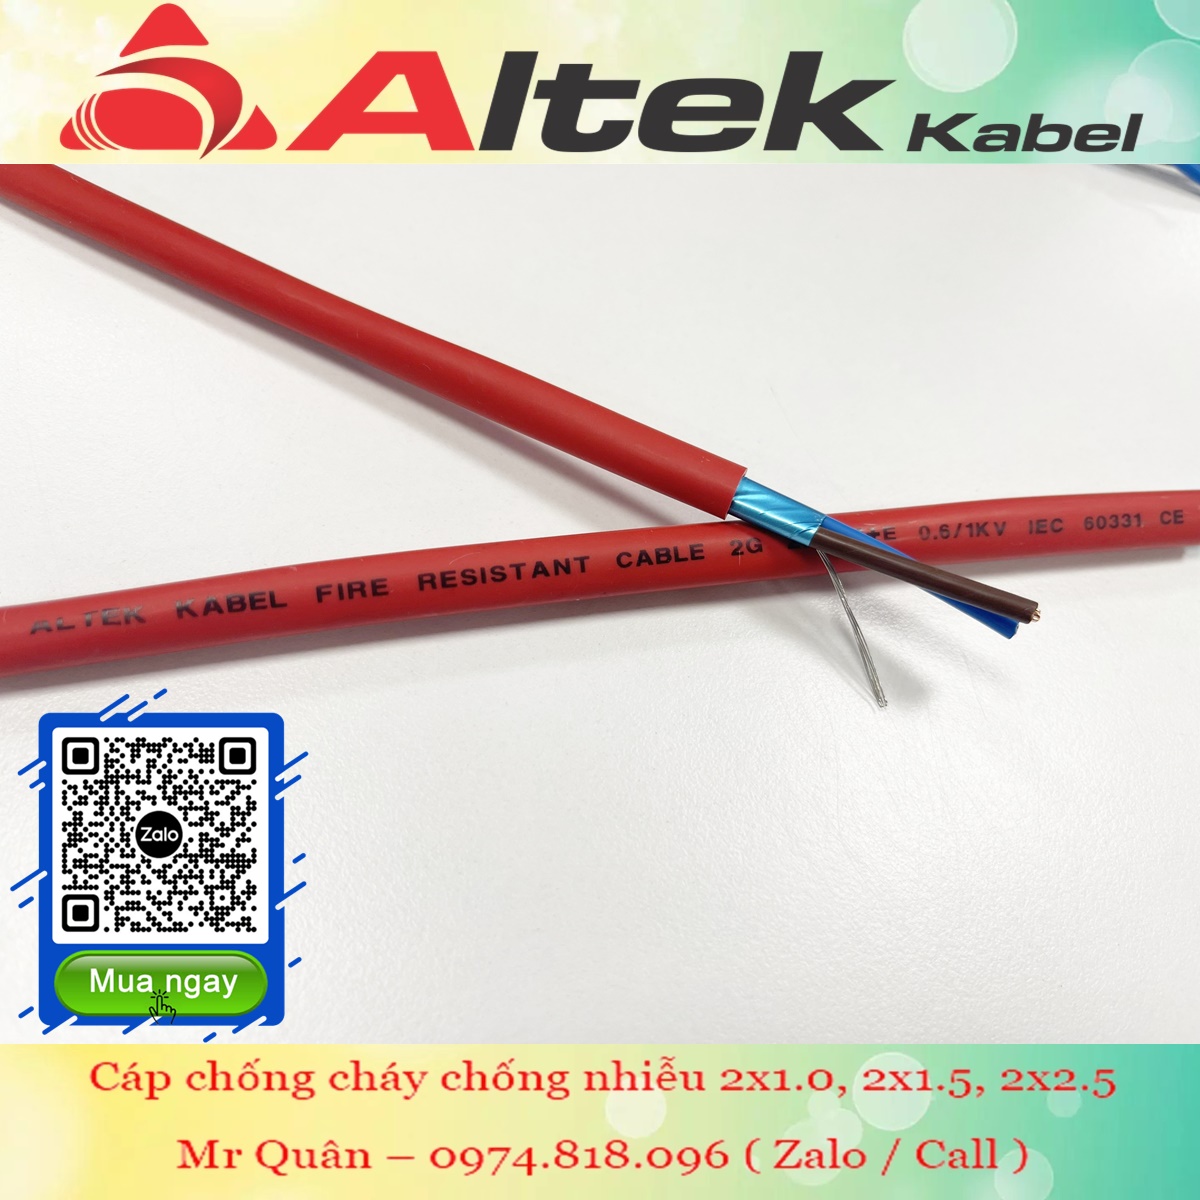 Cáp chống cháy chống nhiễu Altek Kabel 2x1.5mm² an toàn và ổn định